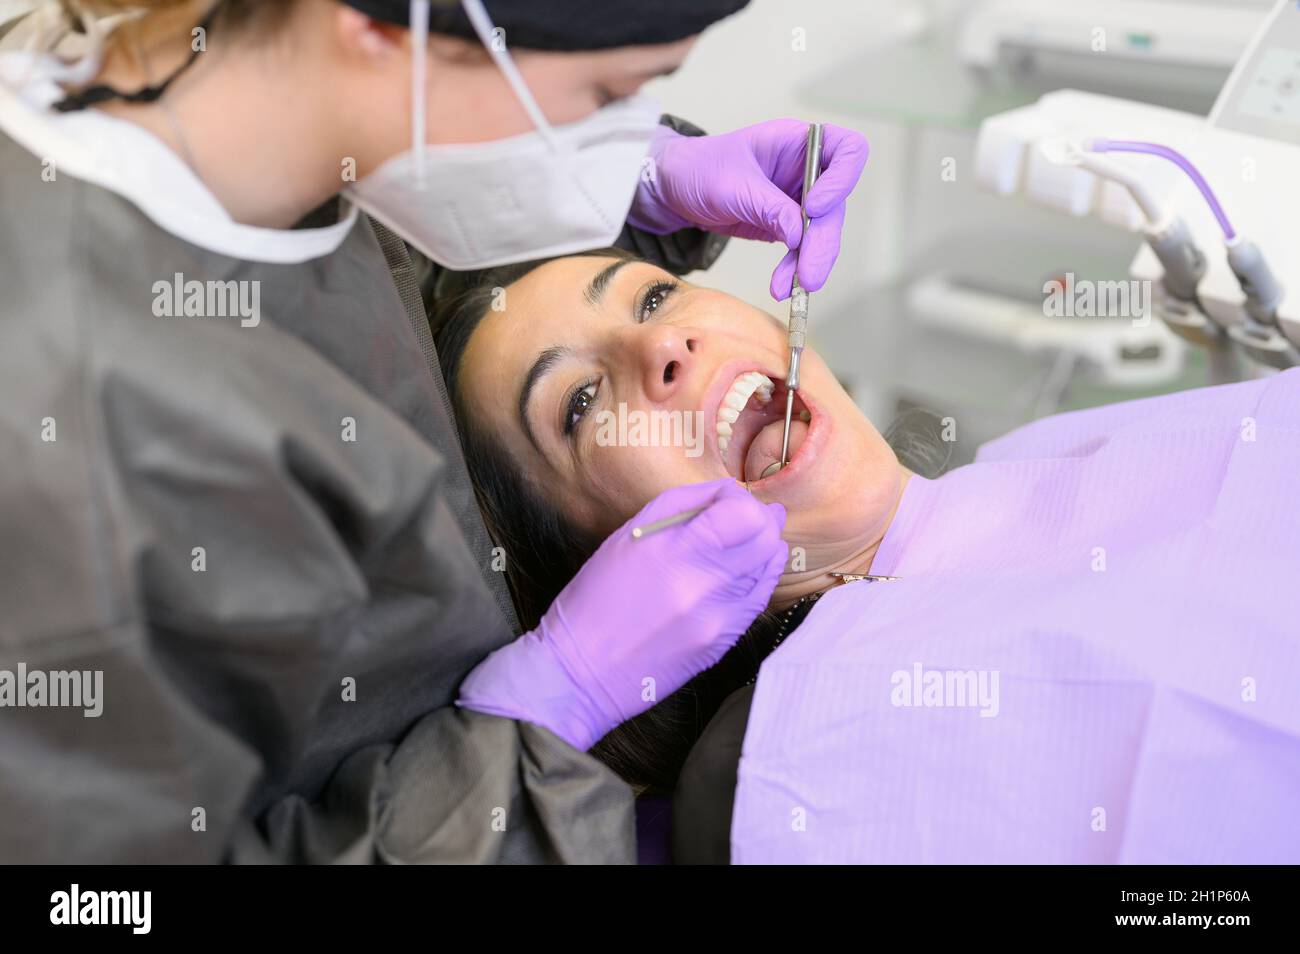 Junge weibliche Patientin besucht Zahnarztpraxis.schöne Frau sitzt am Zahnstuhl mit offenem Mund während der oralen Untersuchung, während der Arzt an den Zähnen arbeitet Stockfoto